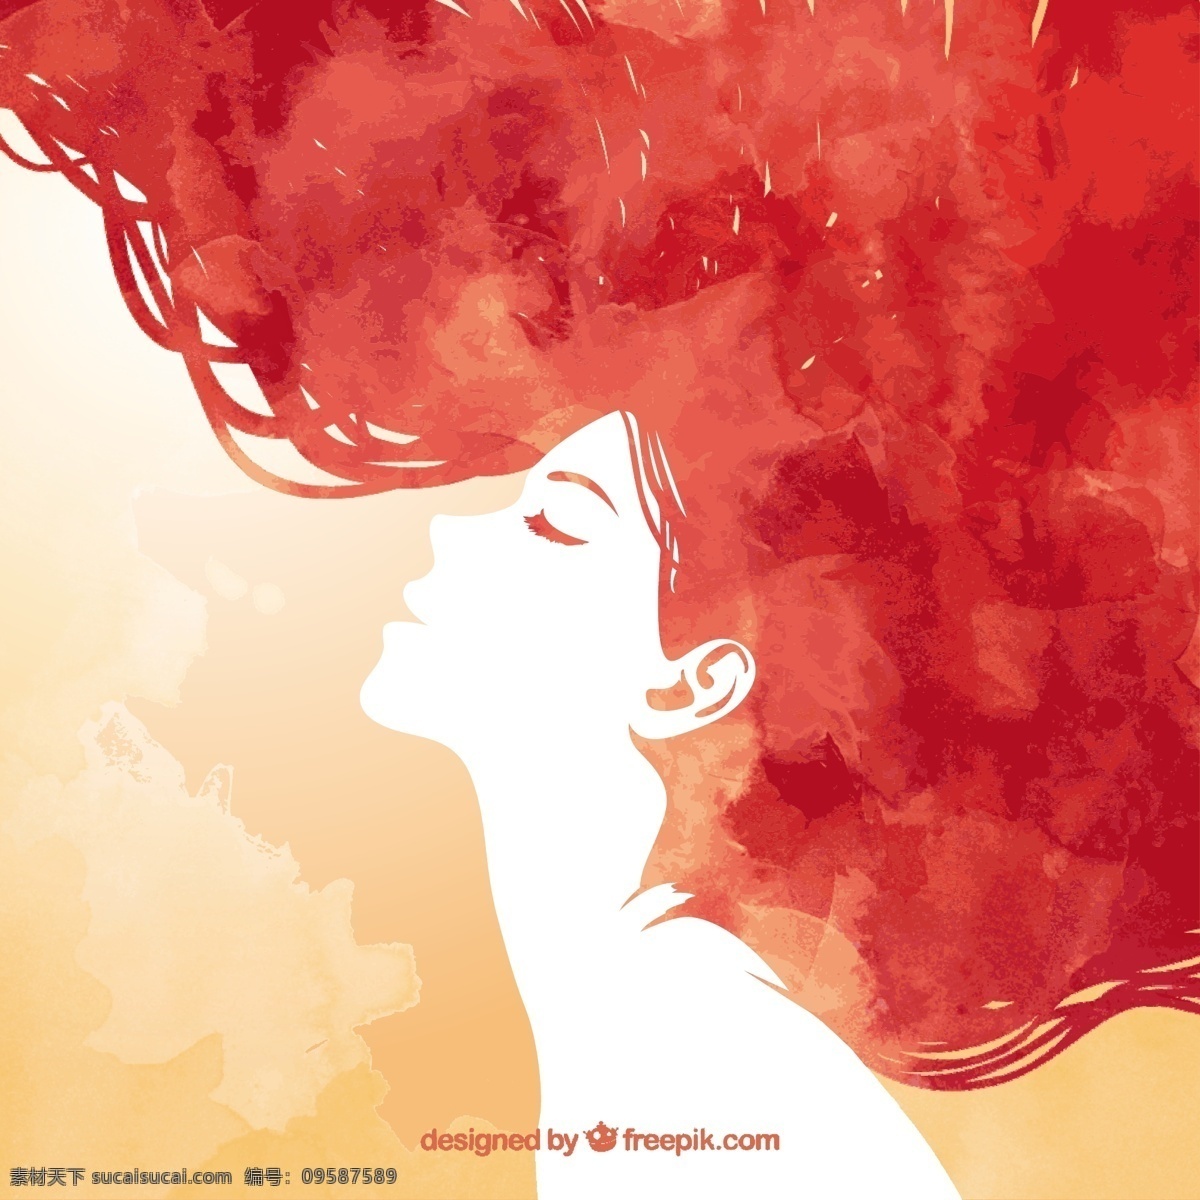 手绘 红 发 女人 水彩 手 头发 轮廓剪影 女性 女的头发 涂红 红色